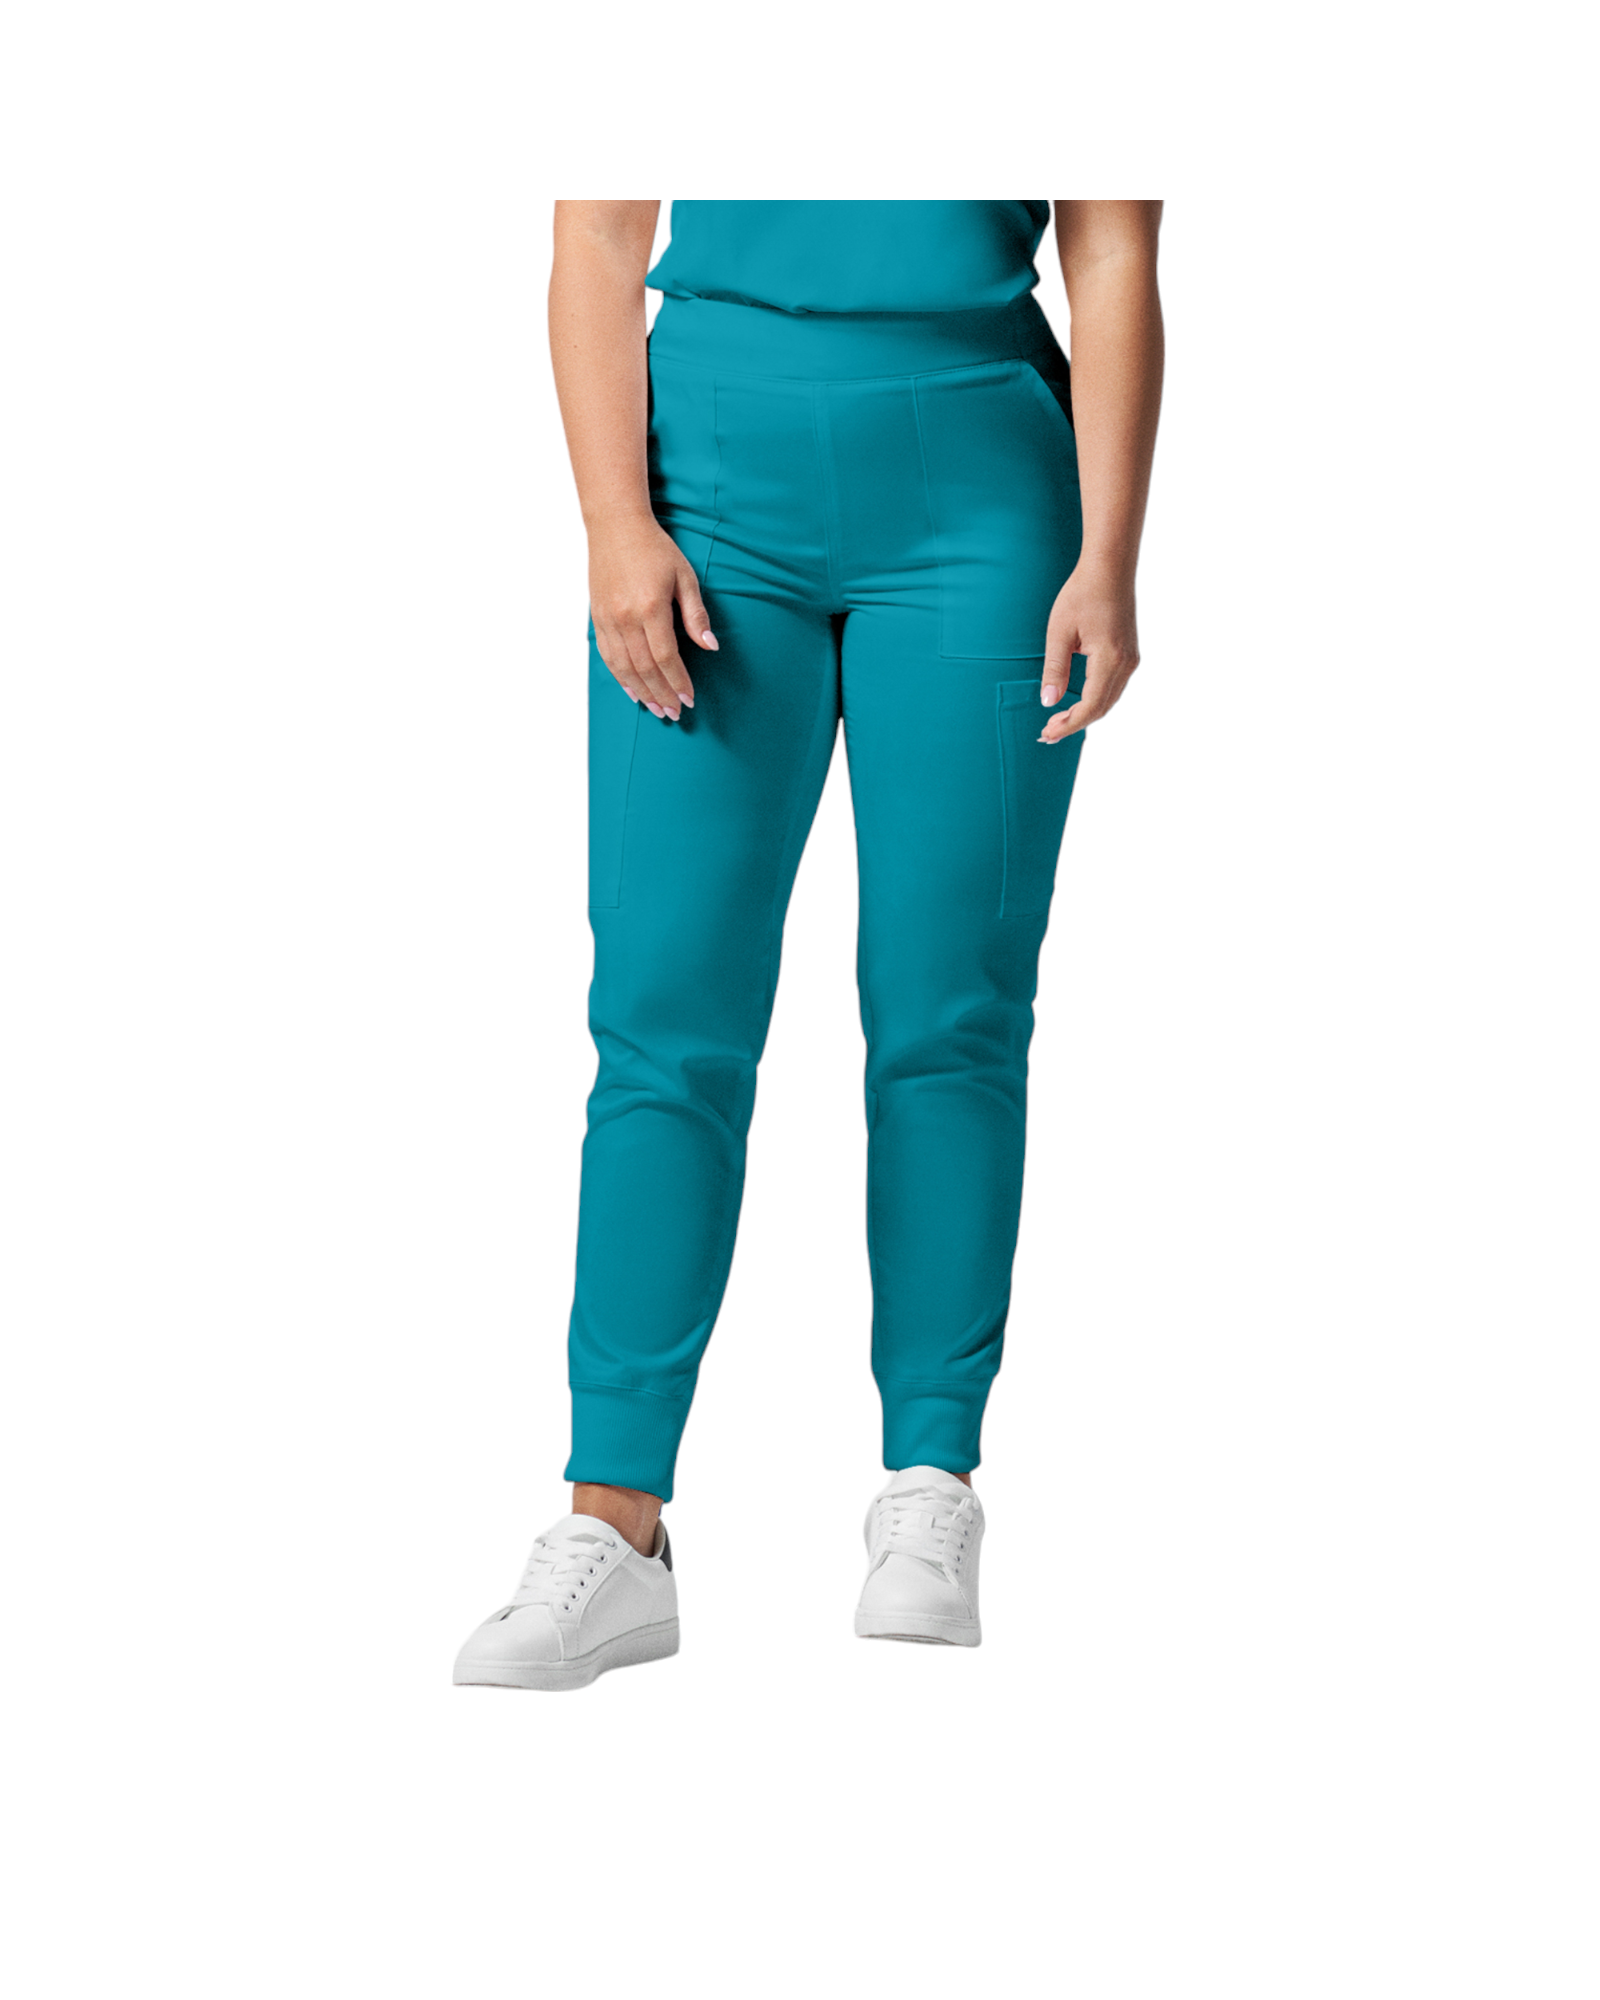 Pantalon de style jogger 6 poches pour femmes Landau Proflex #LB406 couleur Sarcelle